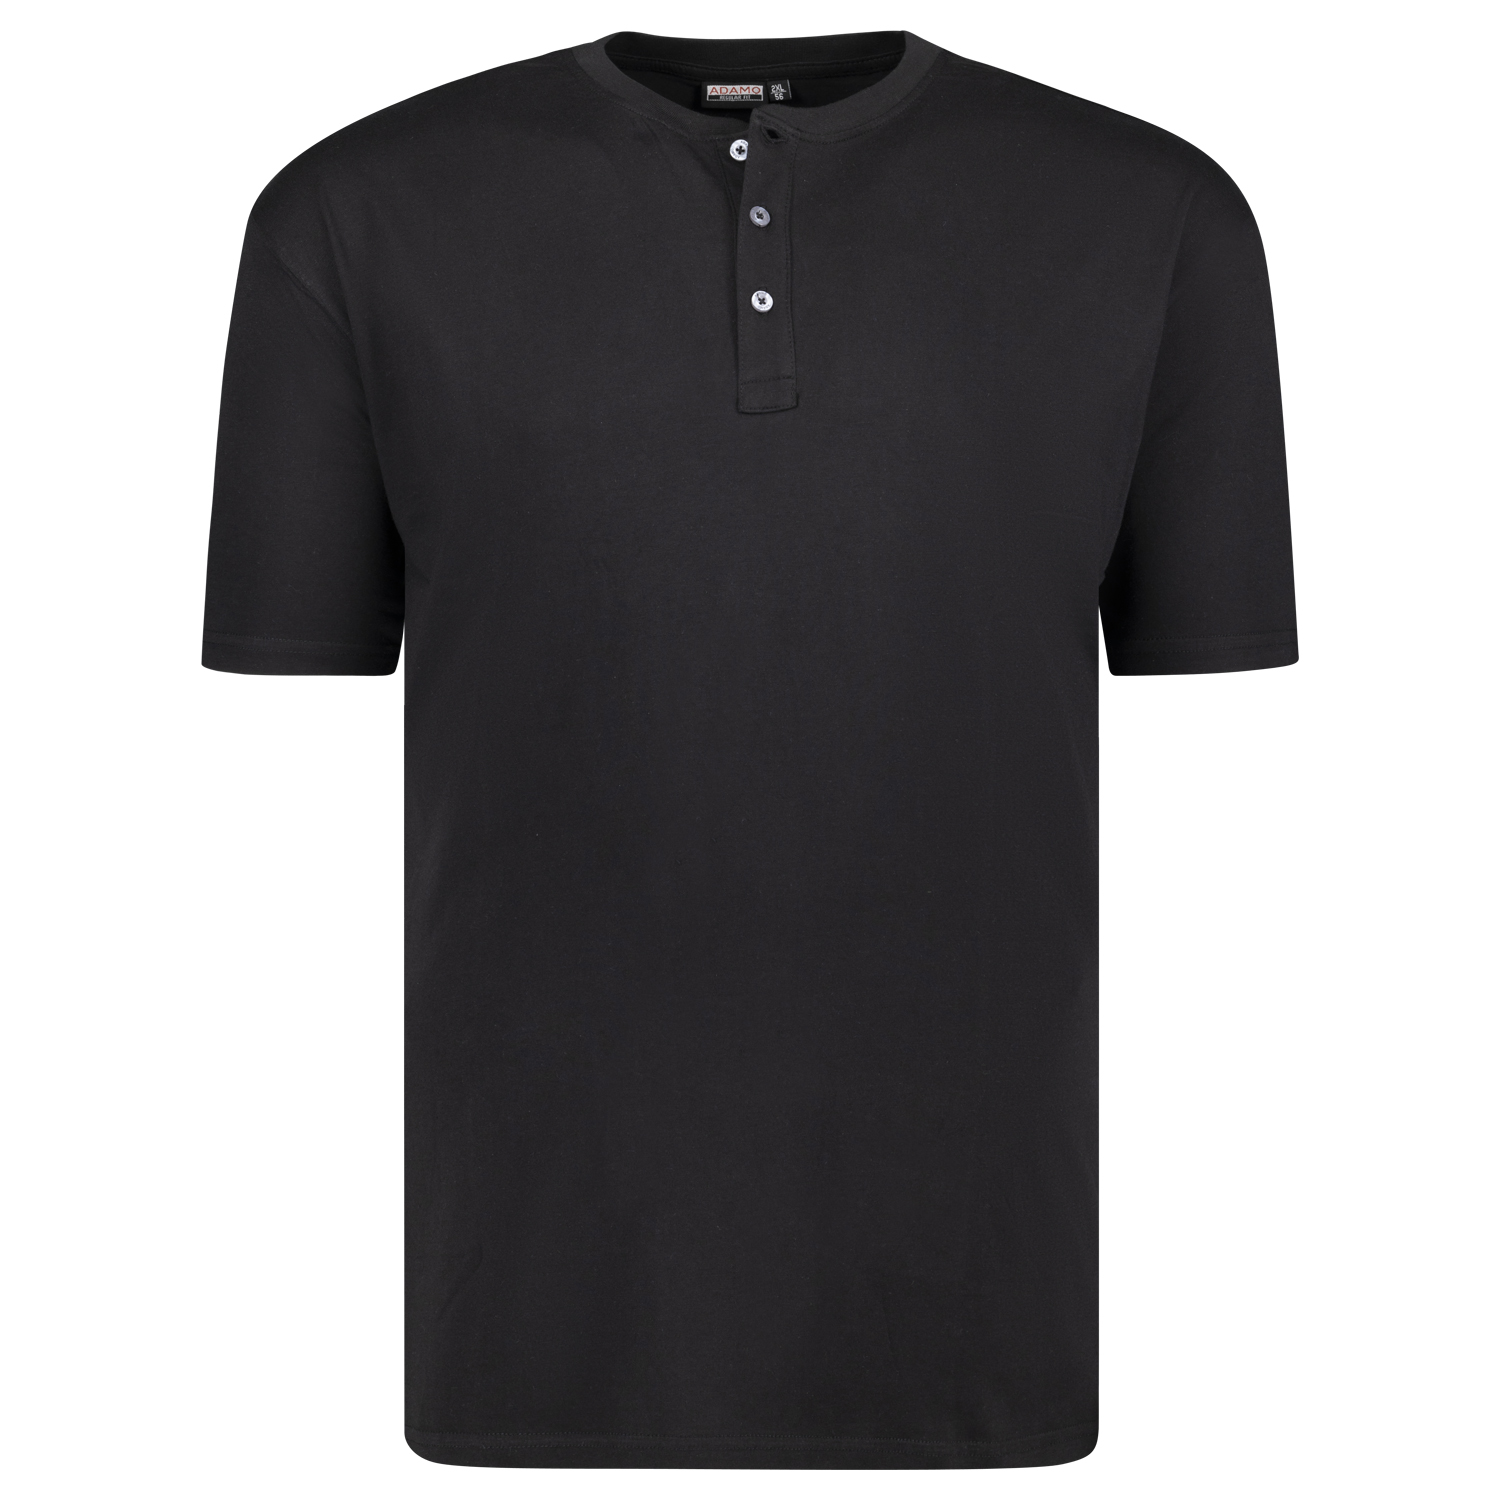 T-shirt série SILAS by ADAMO jusqu'à la grande taille 10XL - couleur: noir